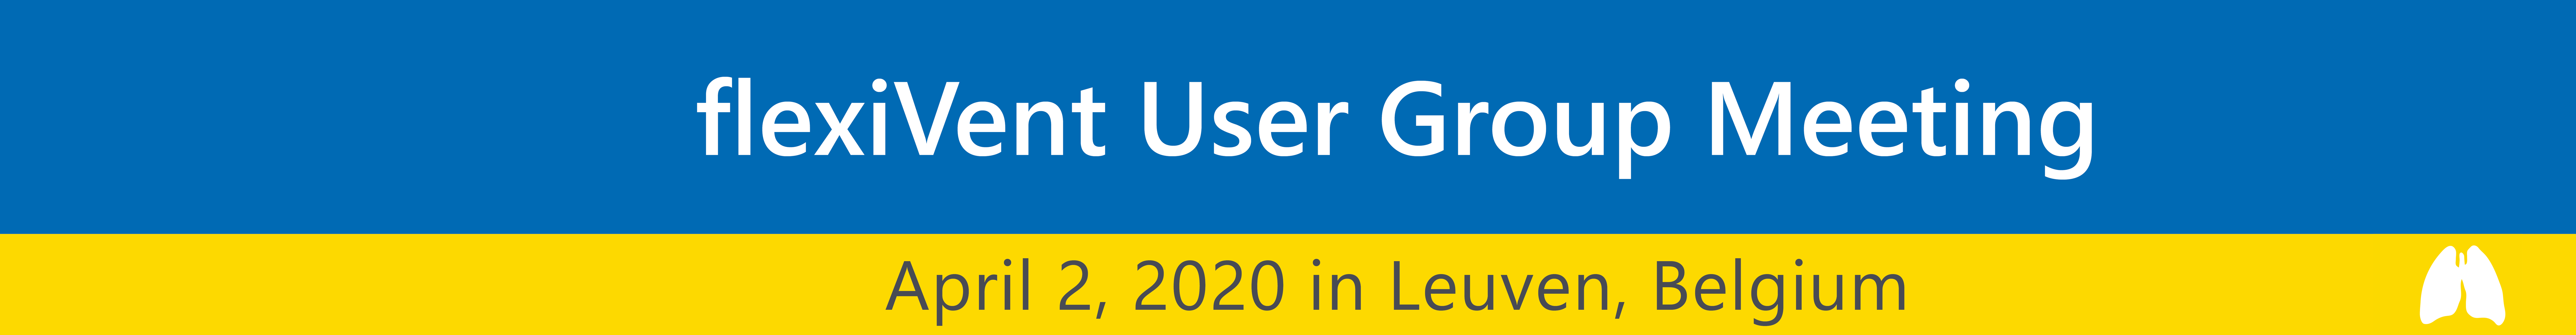 Header-UGM 2020-large-1